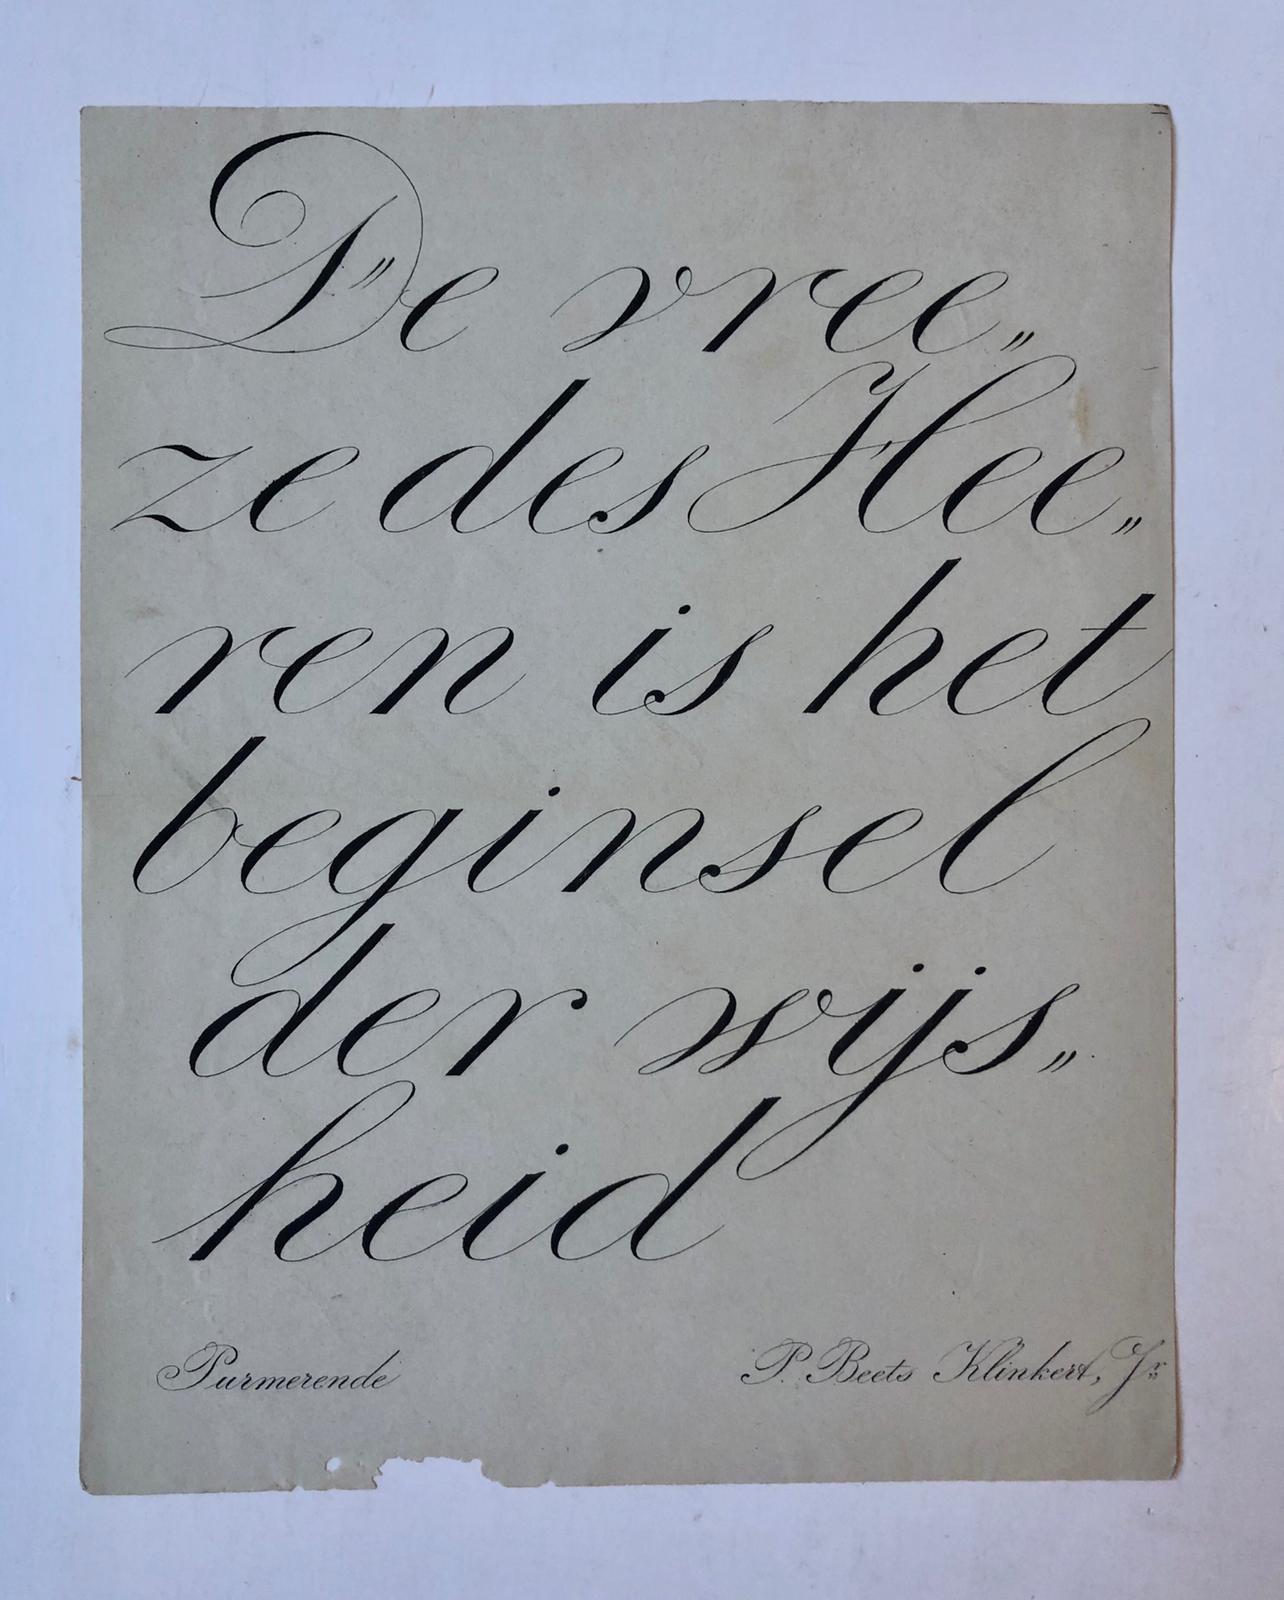  - BEETS KLINKERT Gekalligrafeerd blad, getekend `Purmerend, P. Beets Klinkert Jr'. 4o, 1 p.